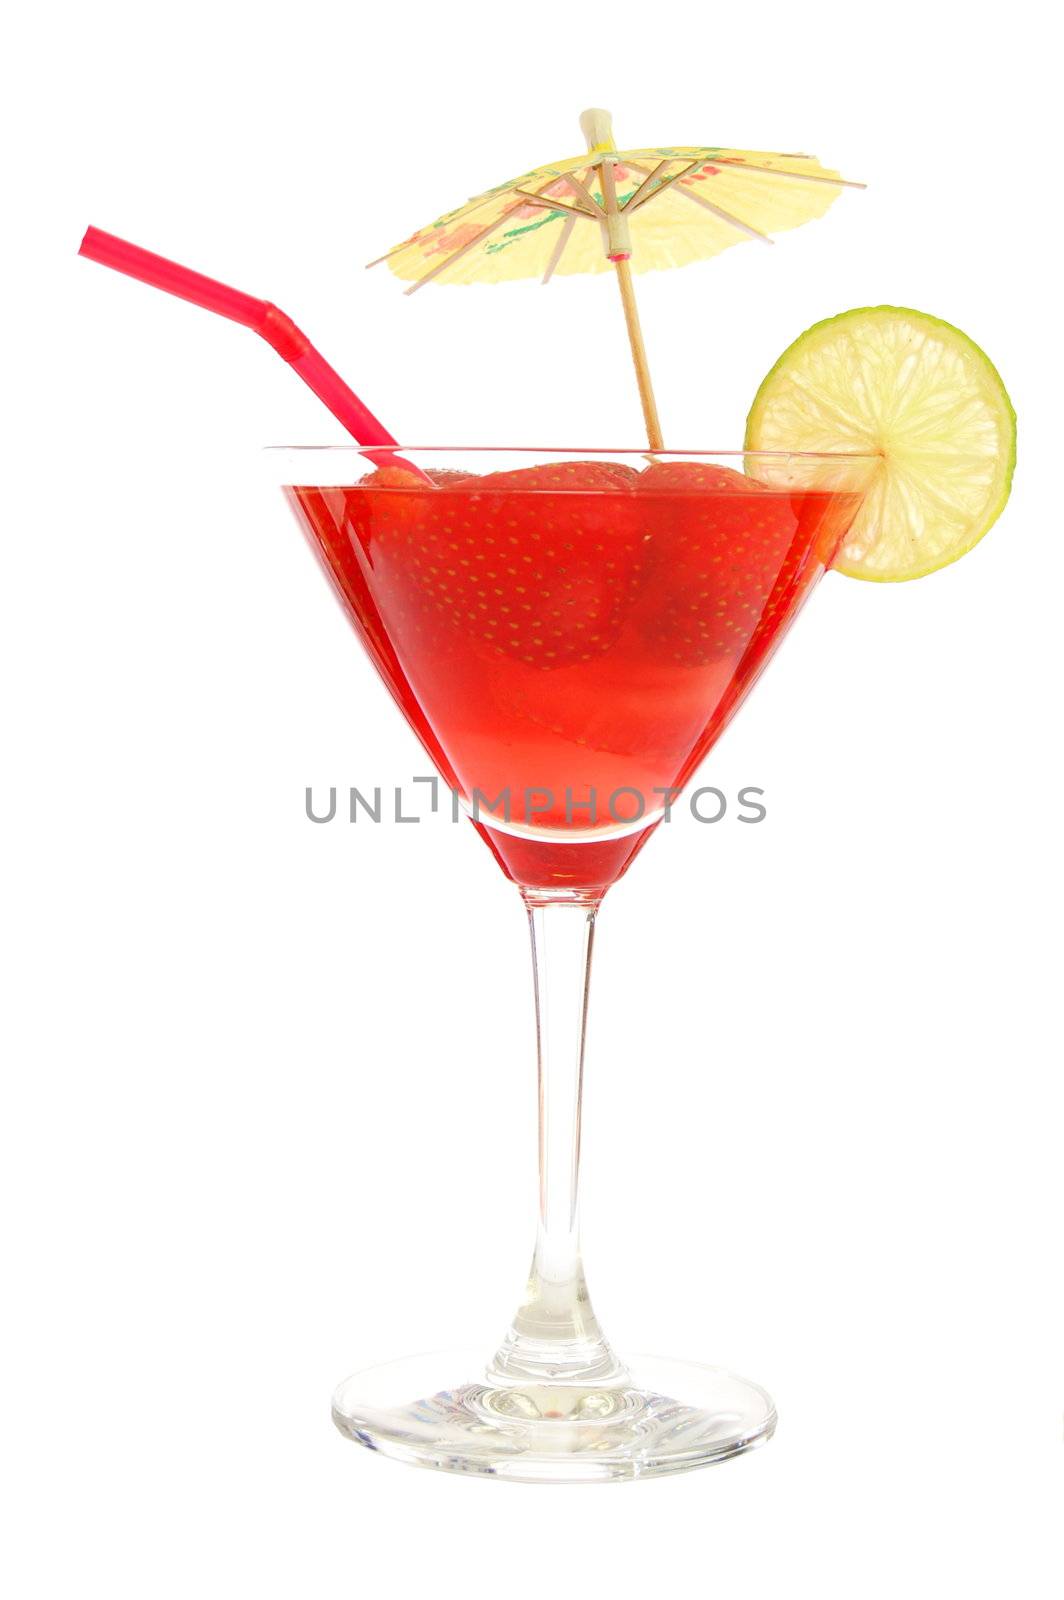 cocktail by gunnar3000